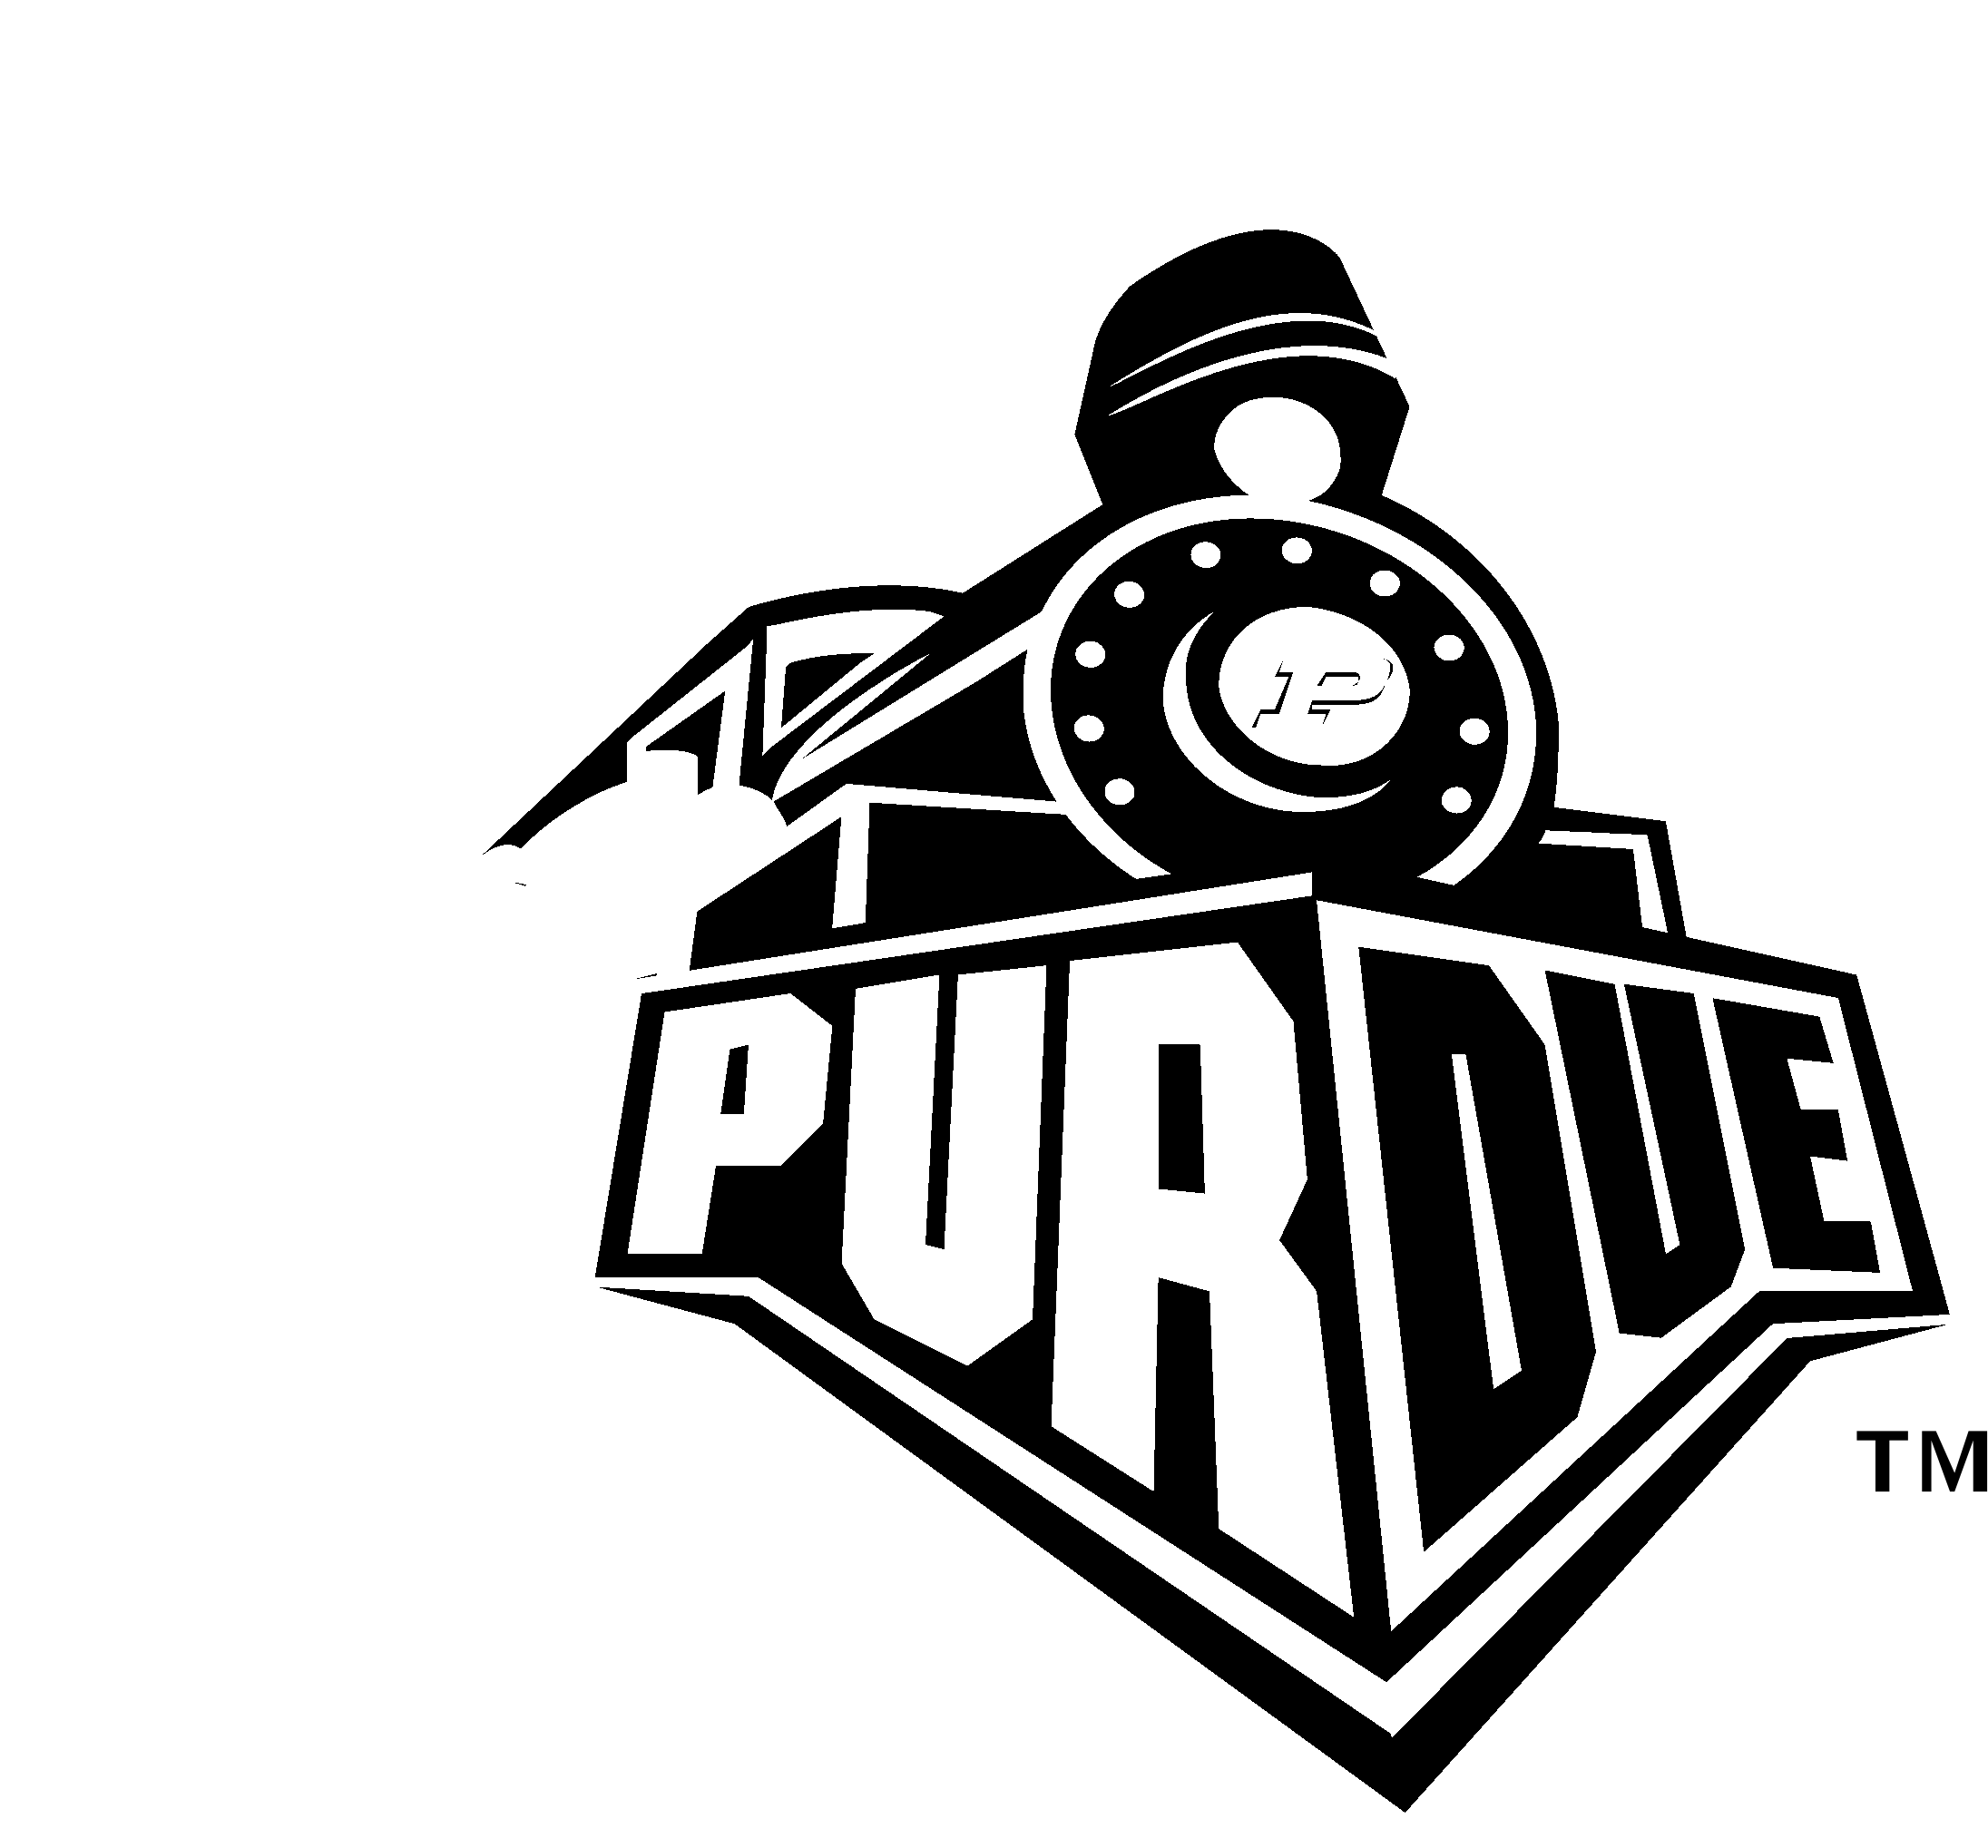 Purdue University Boilermakers Logo Black And White - Purdue Boilermakers Logo Clipart (2400x2400), Png Download